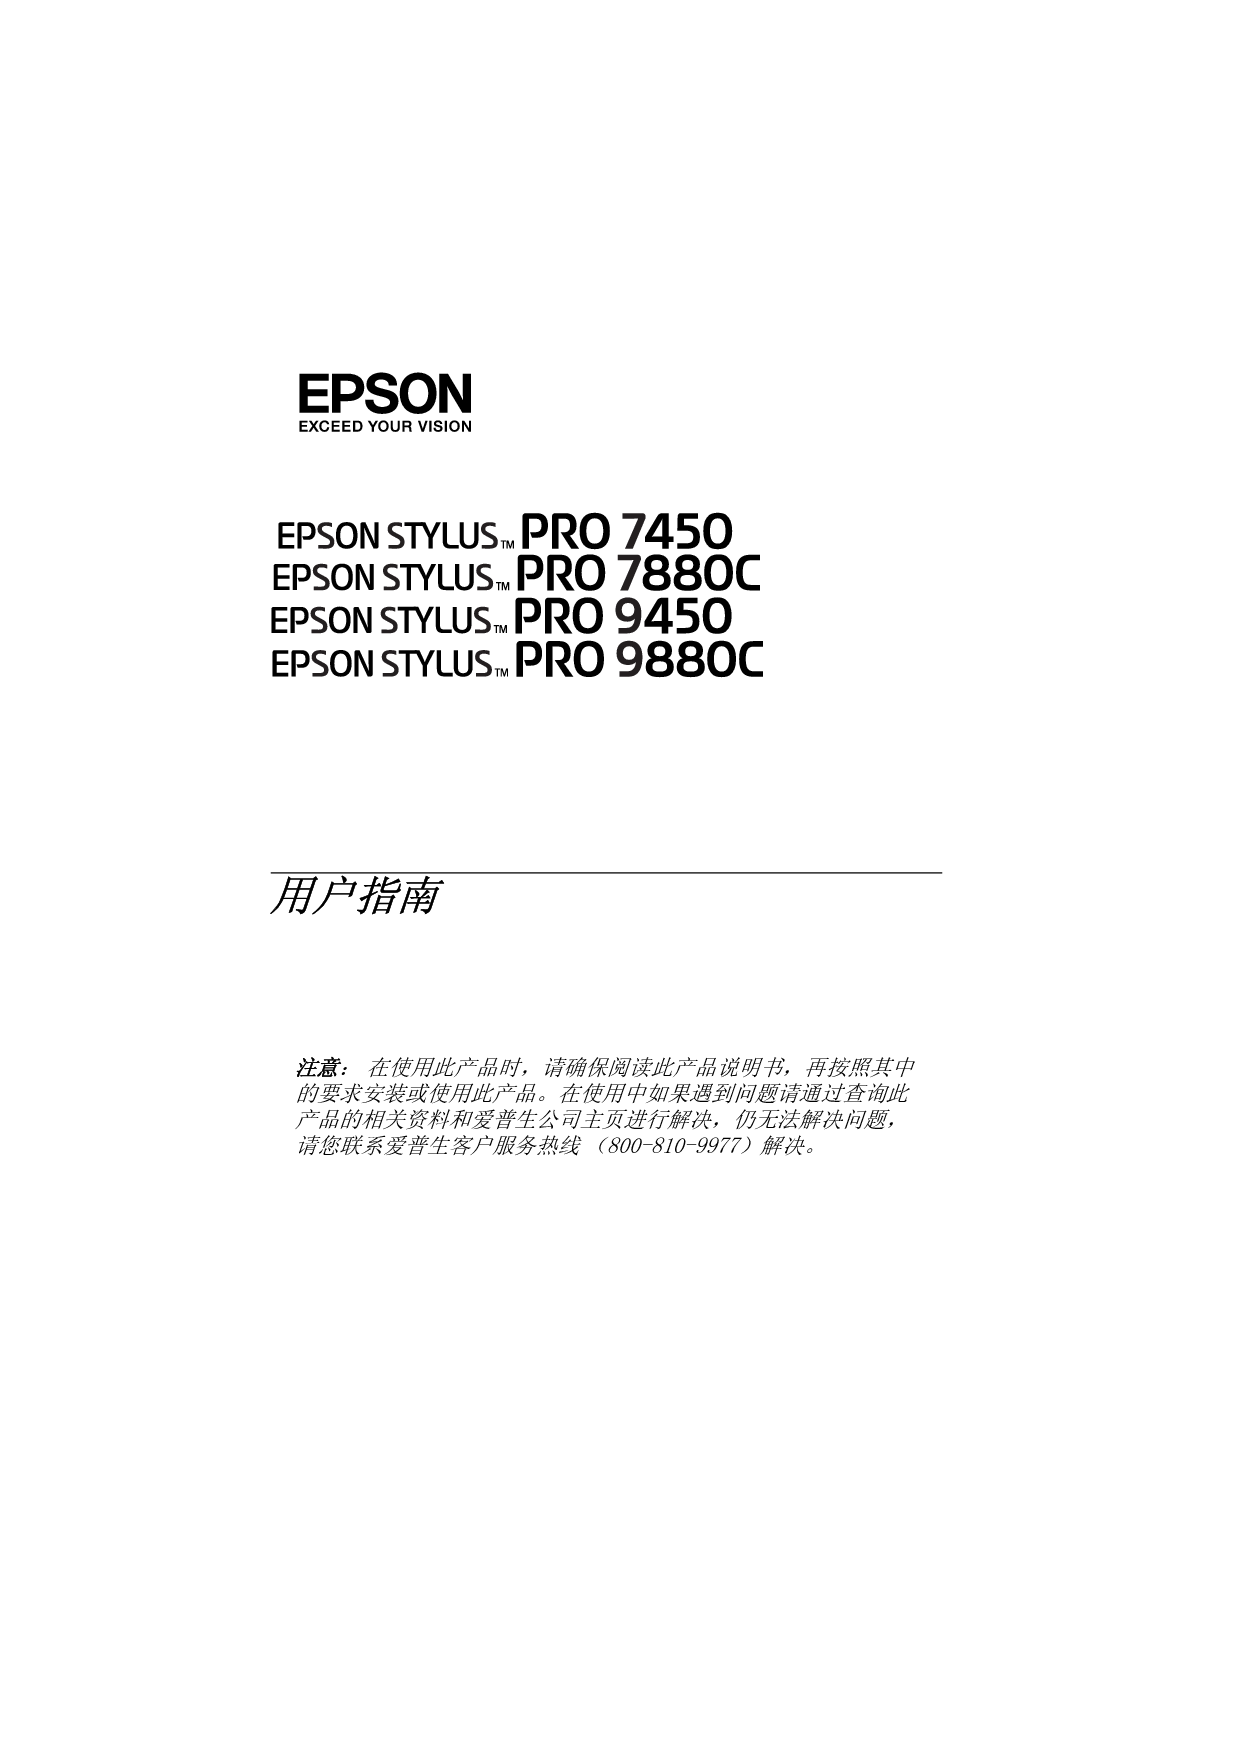 爱普生 Epson STYLUS PRO 7450 用户指南 封面